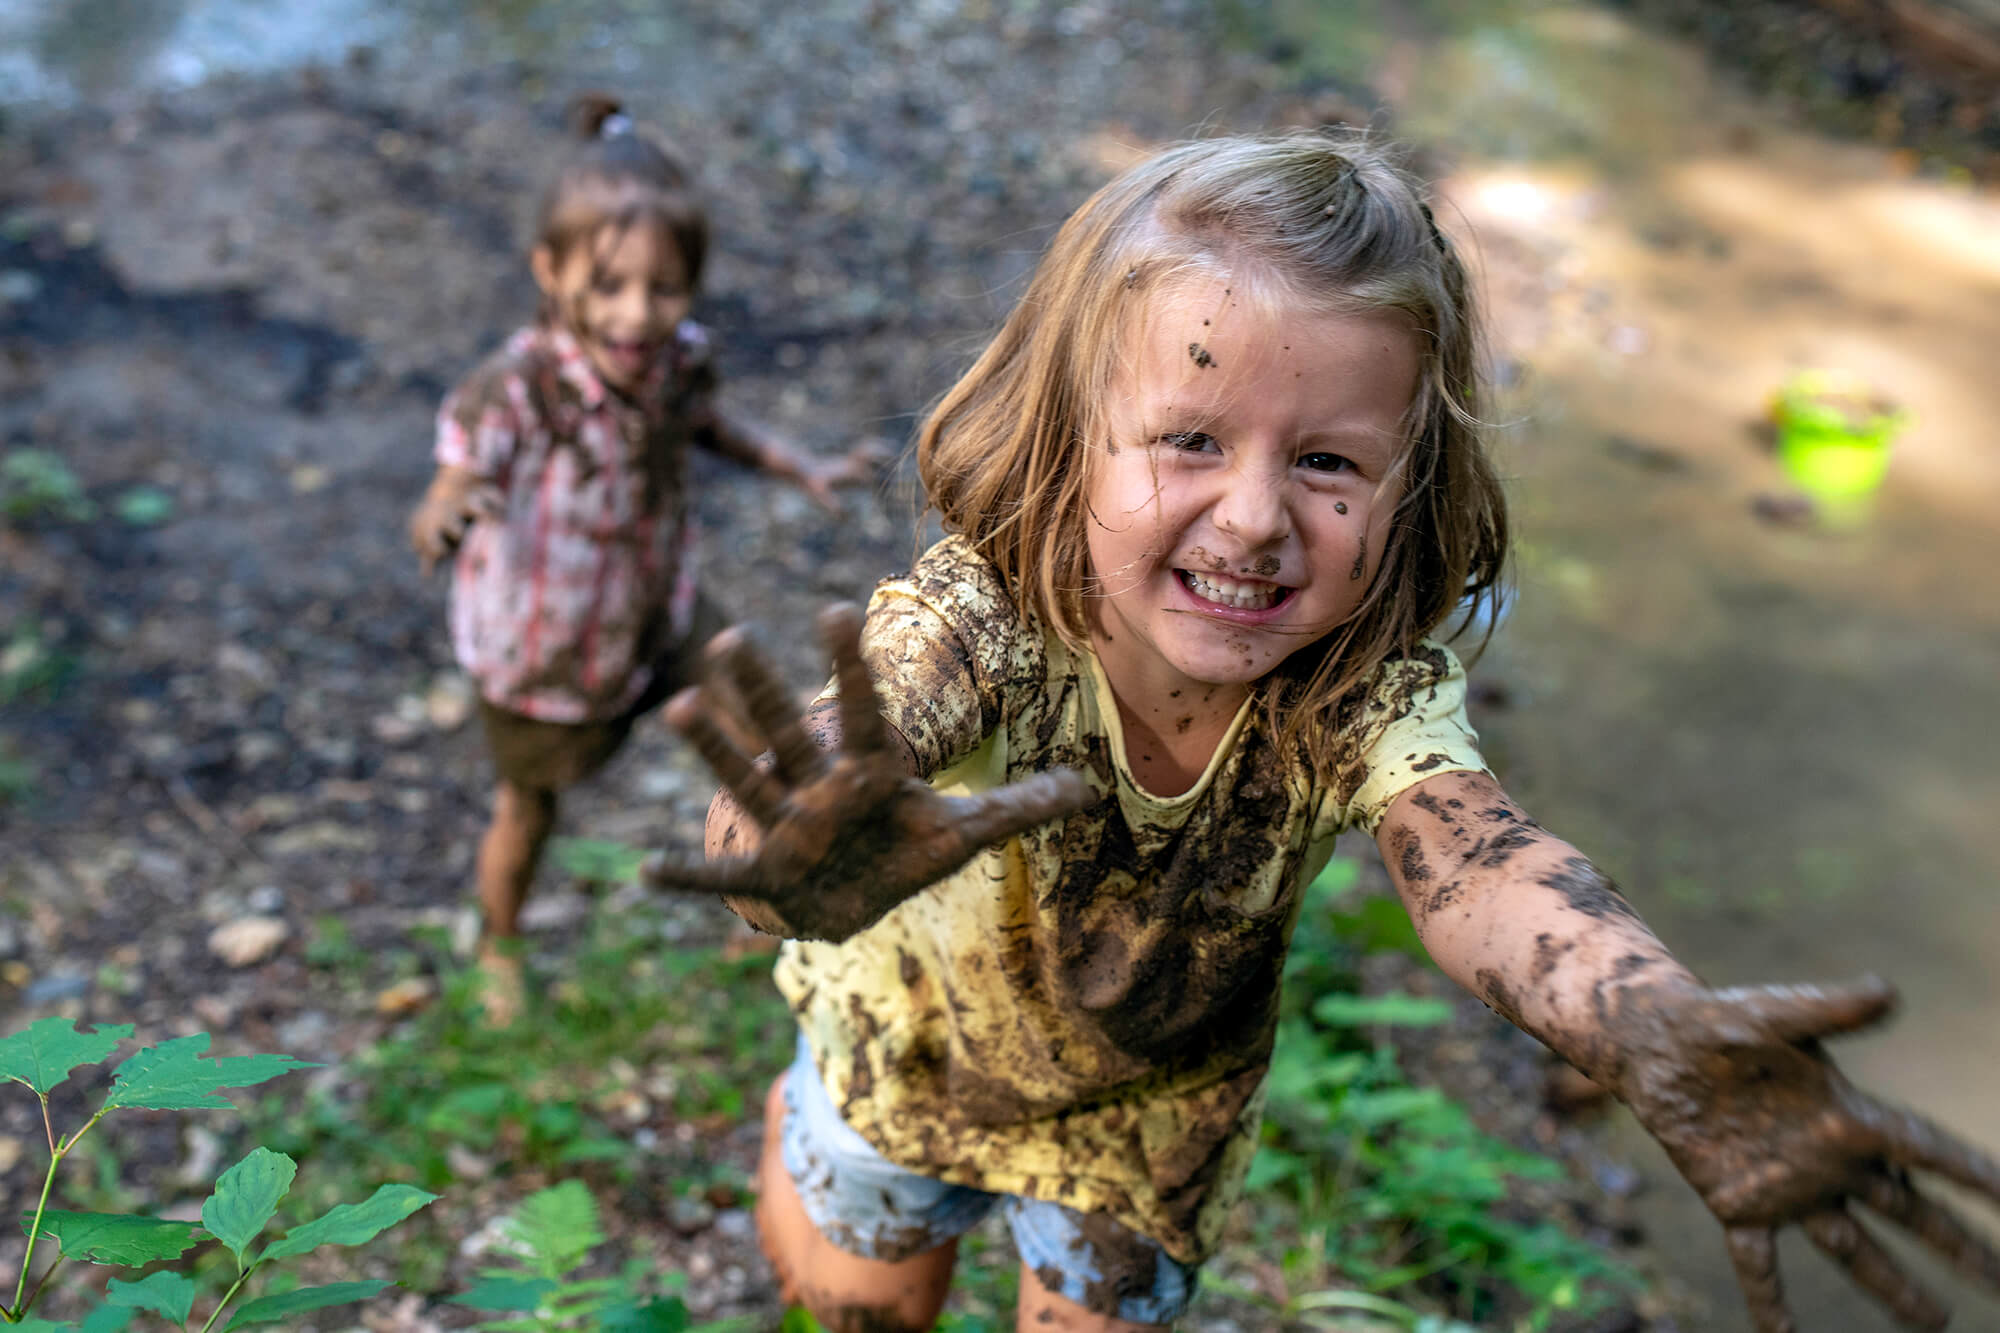 Muddy Children